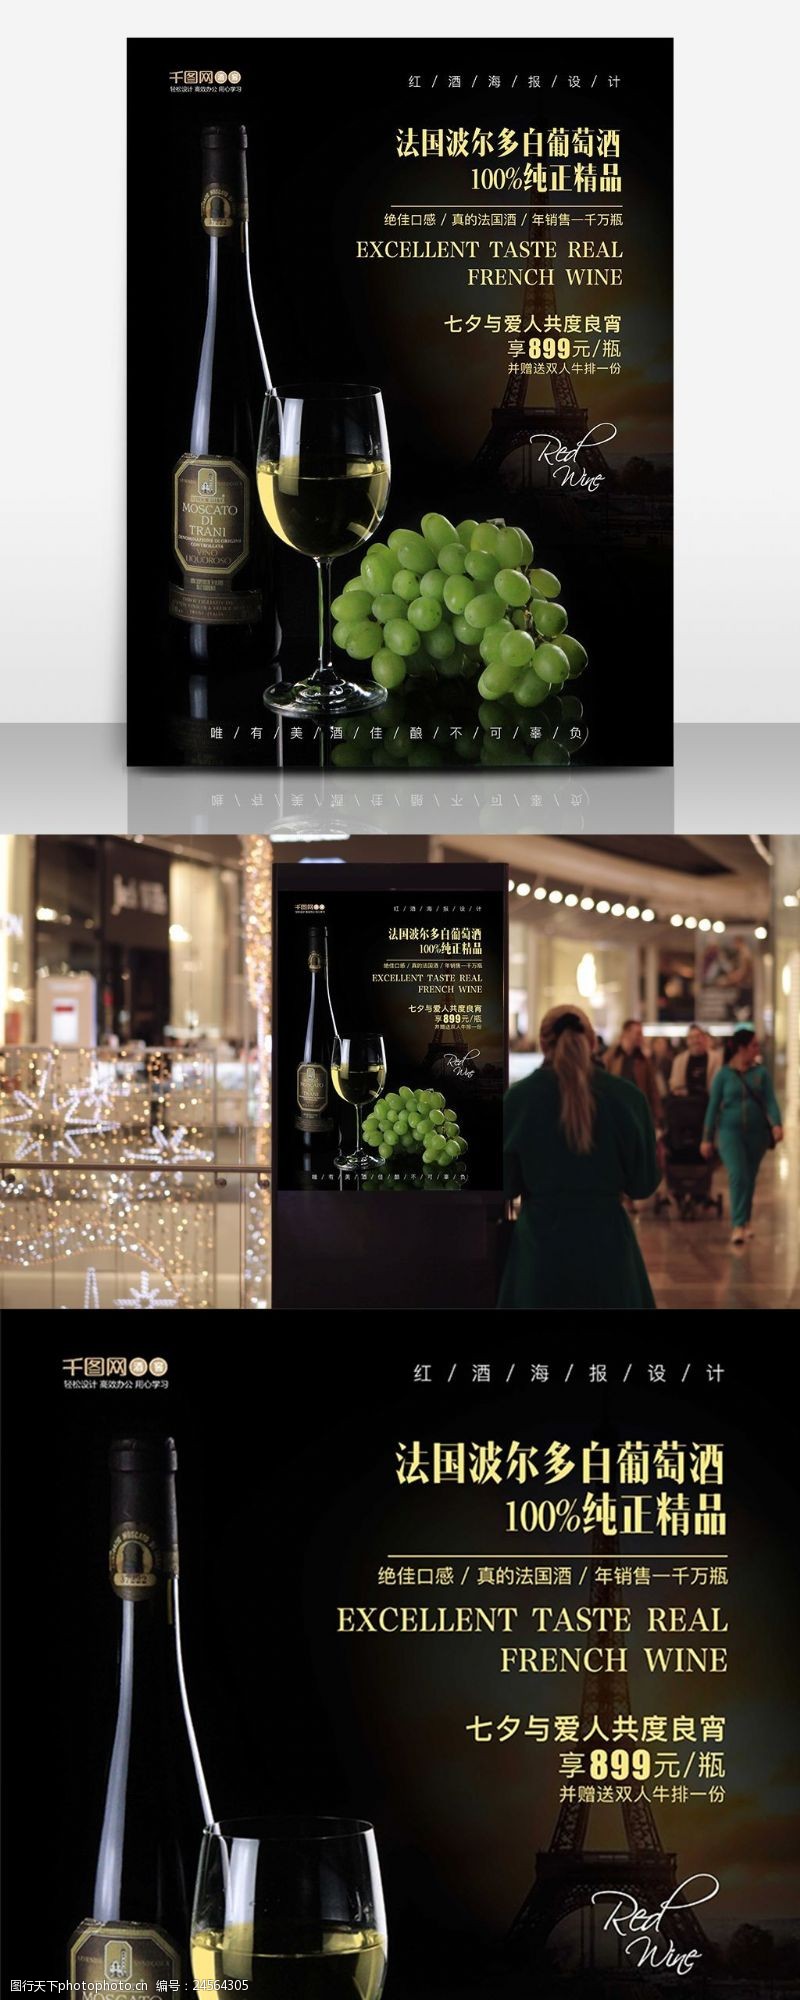 高档红酒展板法国波尔多白葡萄酒高档逼格高大上海报设计